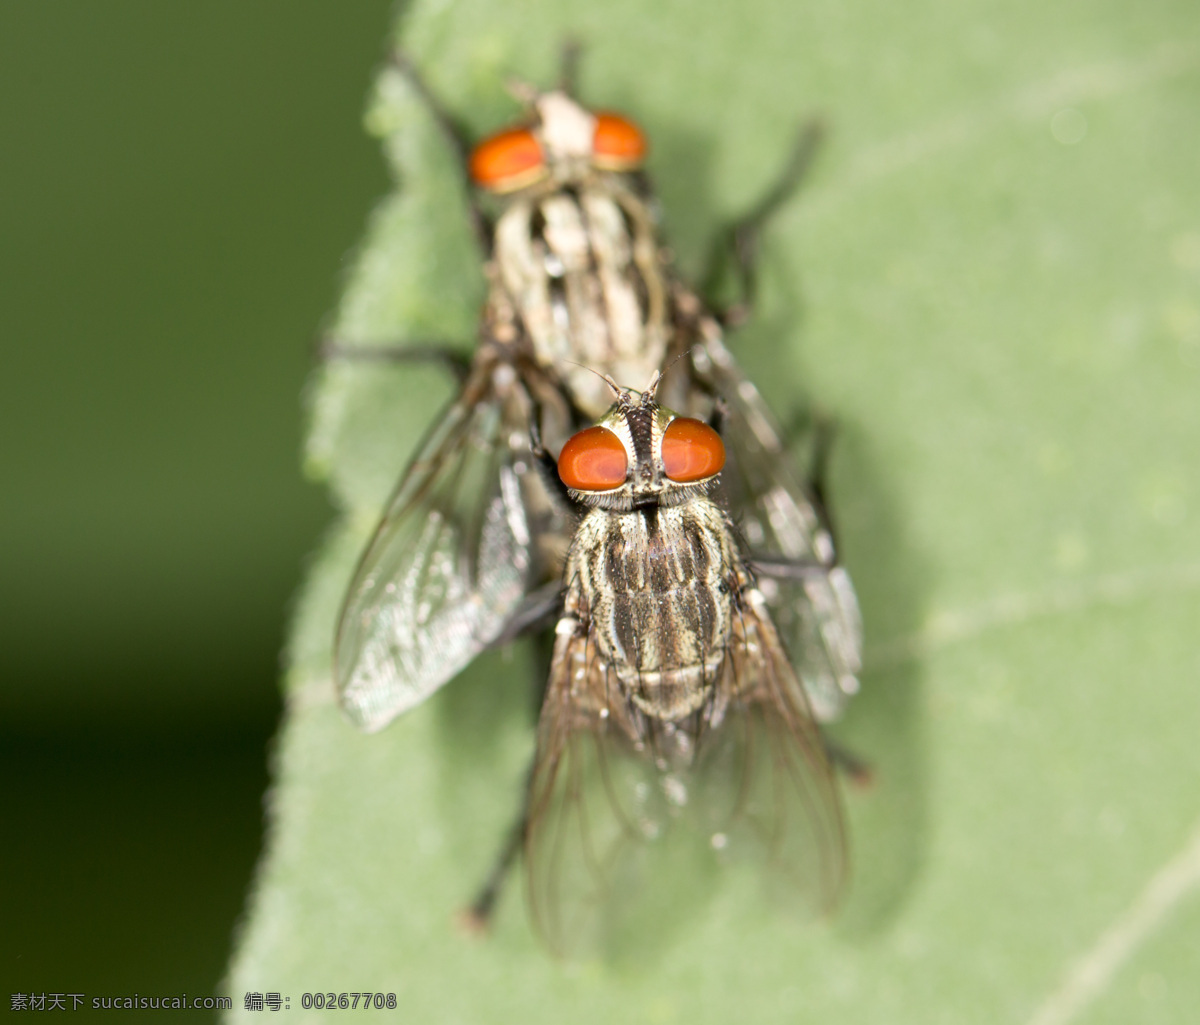 两 只 苍蝇 交配 昆虫 动物摄影 动物世界 昆虫世界 生物世界 绿色